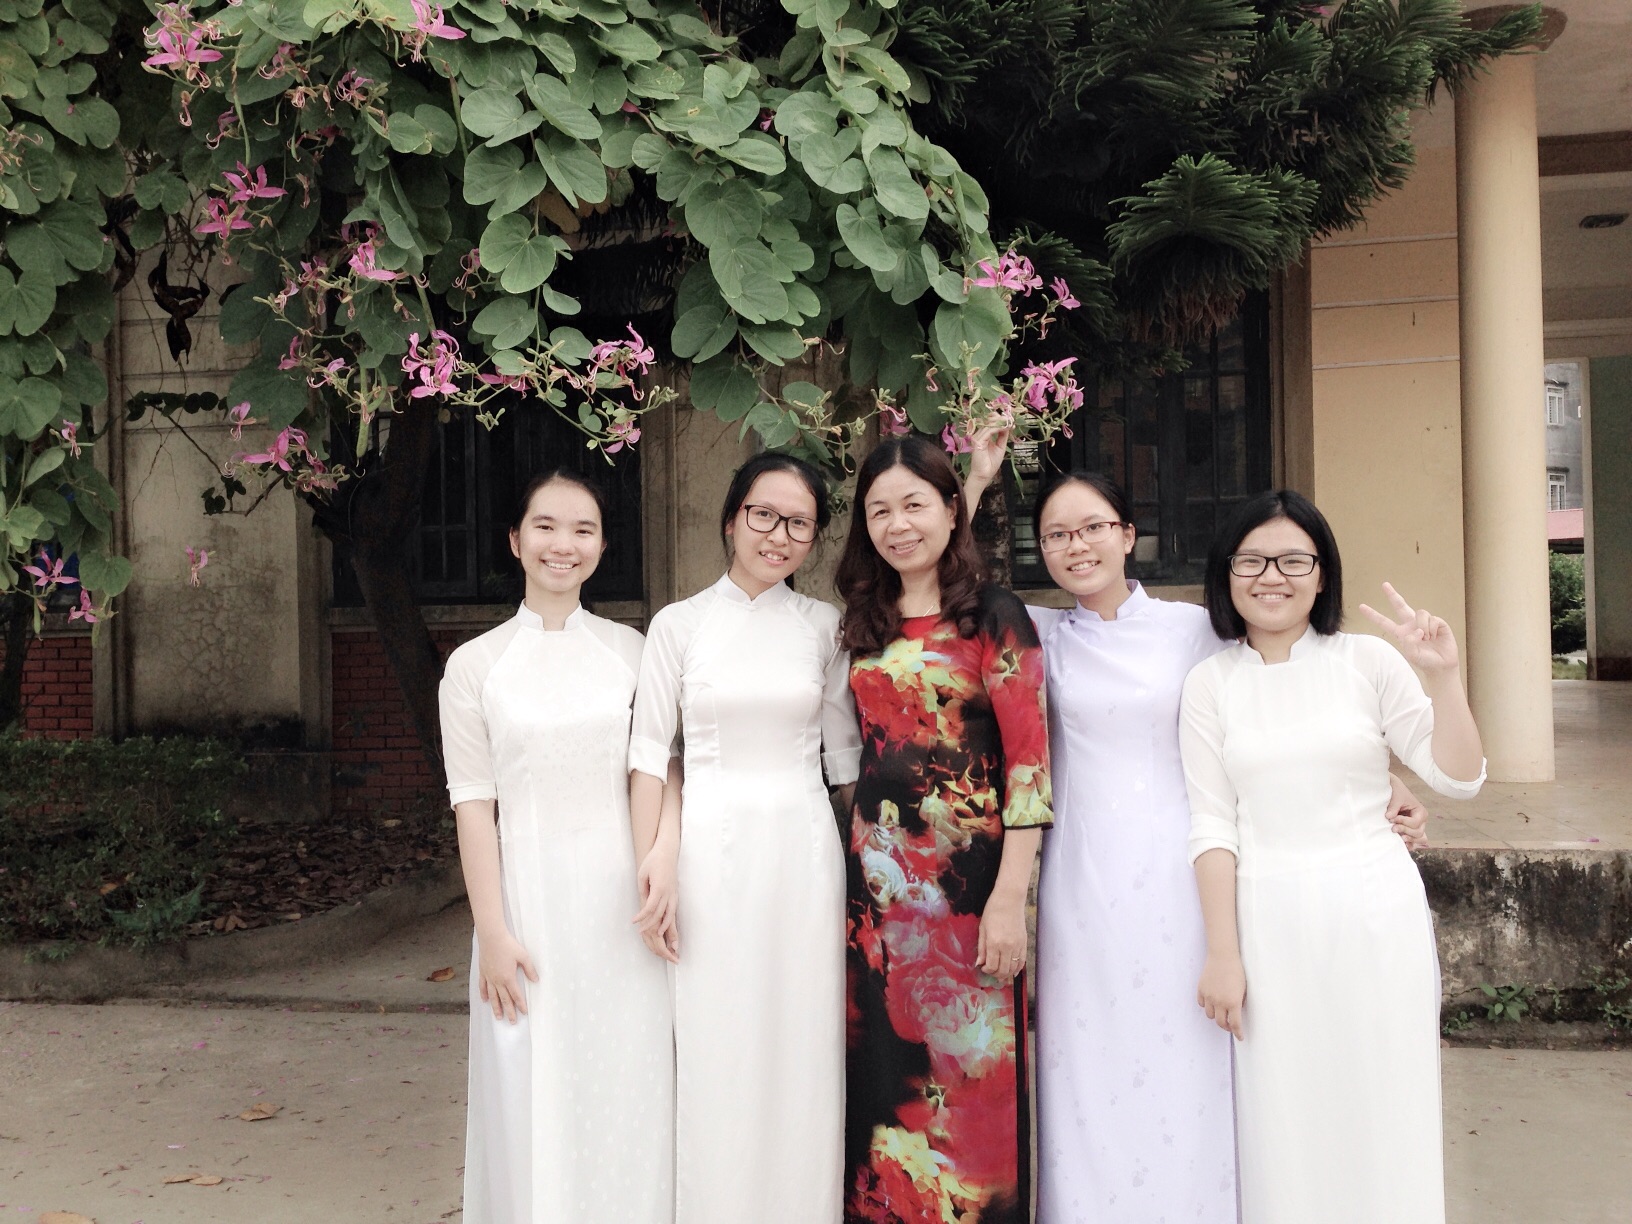 Chân dung nữ sinh Bắc Giang đạt giải nhất Văn HSG quốc gia 2016